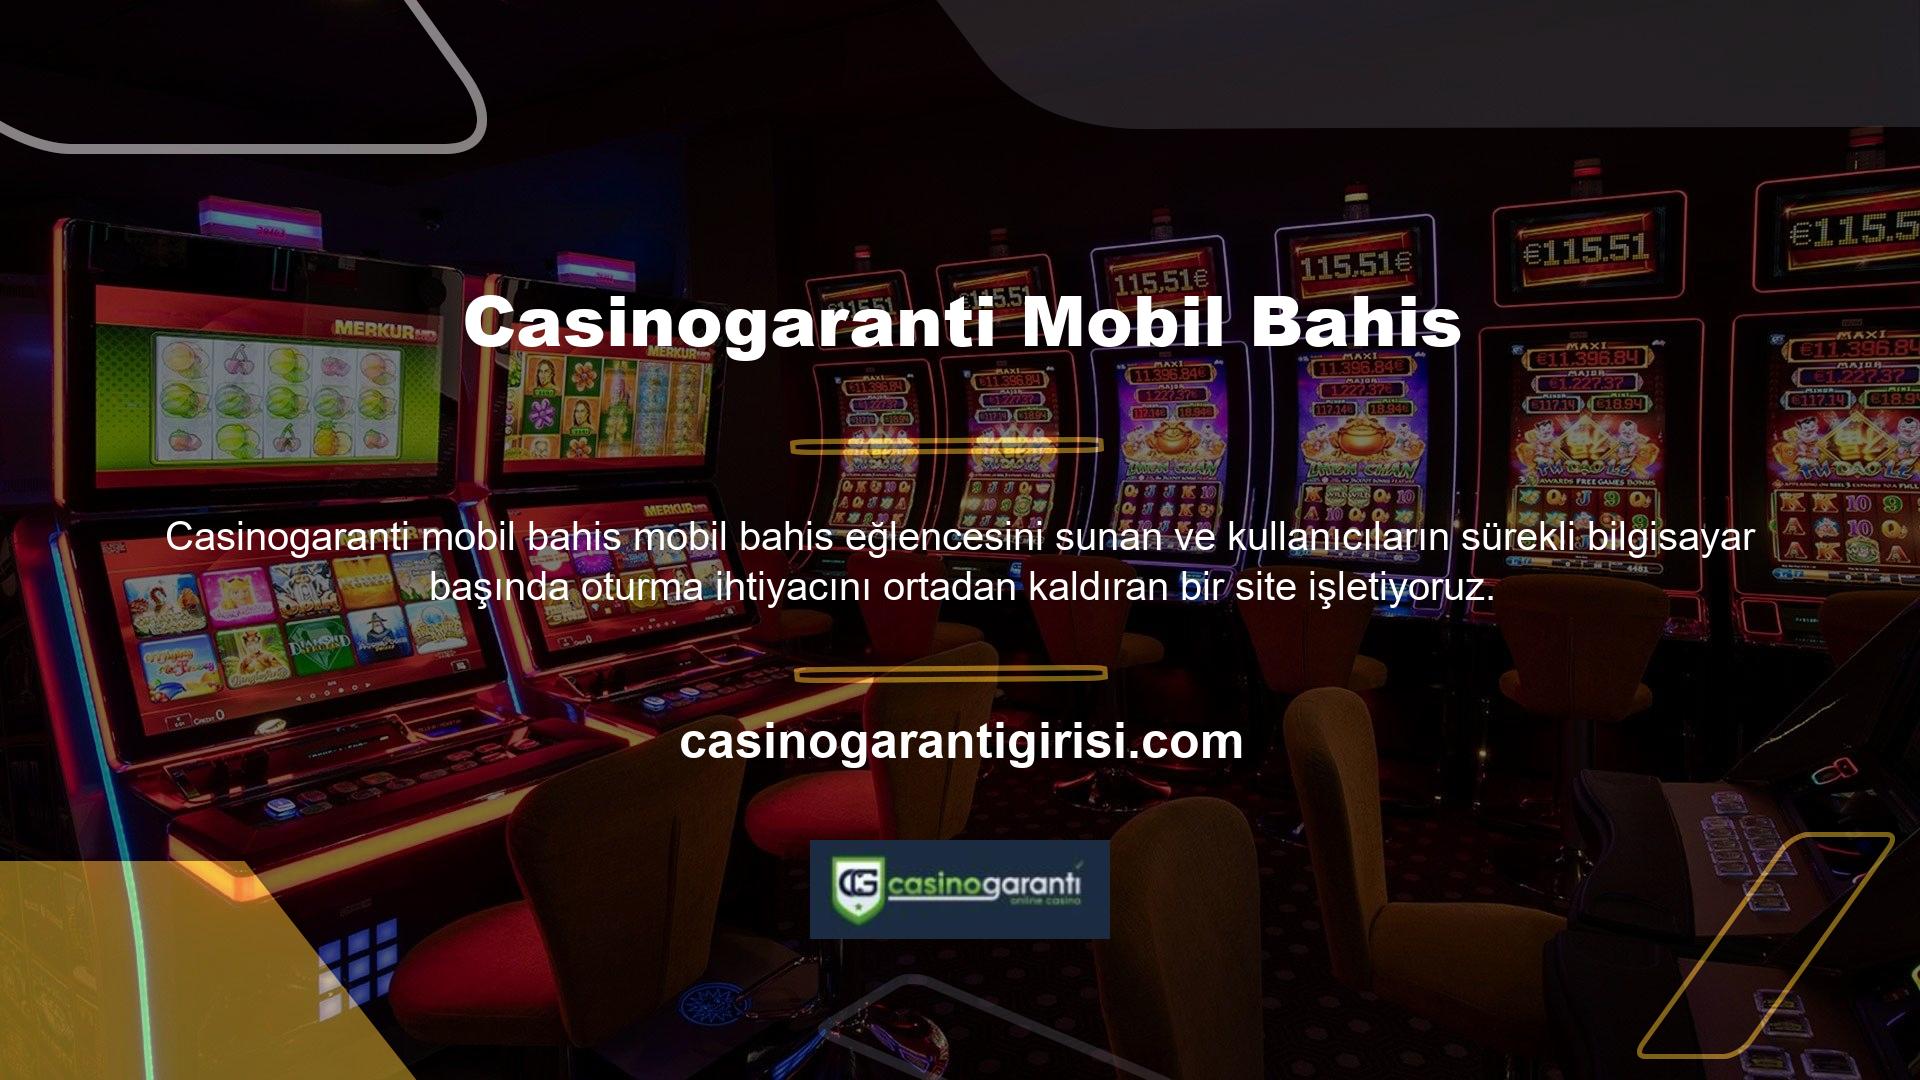 Casinogaranti, kaliteli tasarımıyla kullanıcılara internet üzerinden hizmet vermenin yanı sıra, eksiksiz bir mobil uygulama ile kullanıcılara web sitesini tablet ve cep telefonu gibi cihazlarda da kolayca kullanma olanağı sunuyor